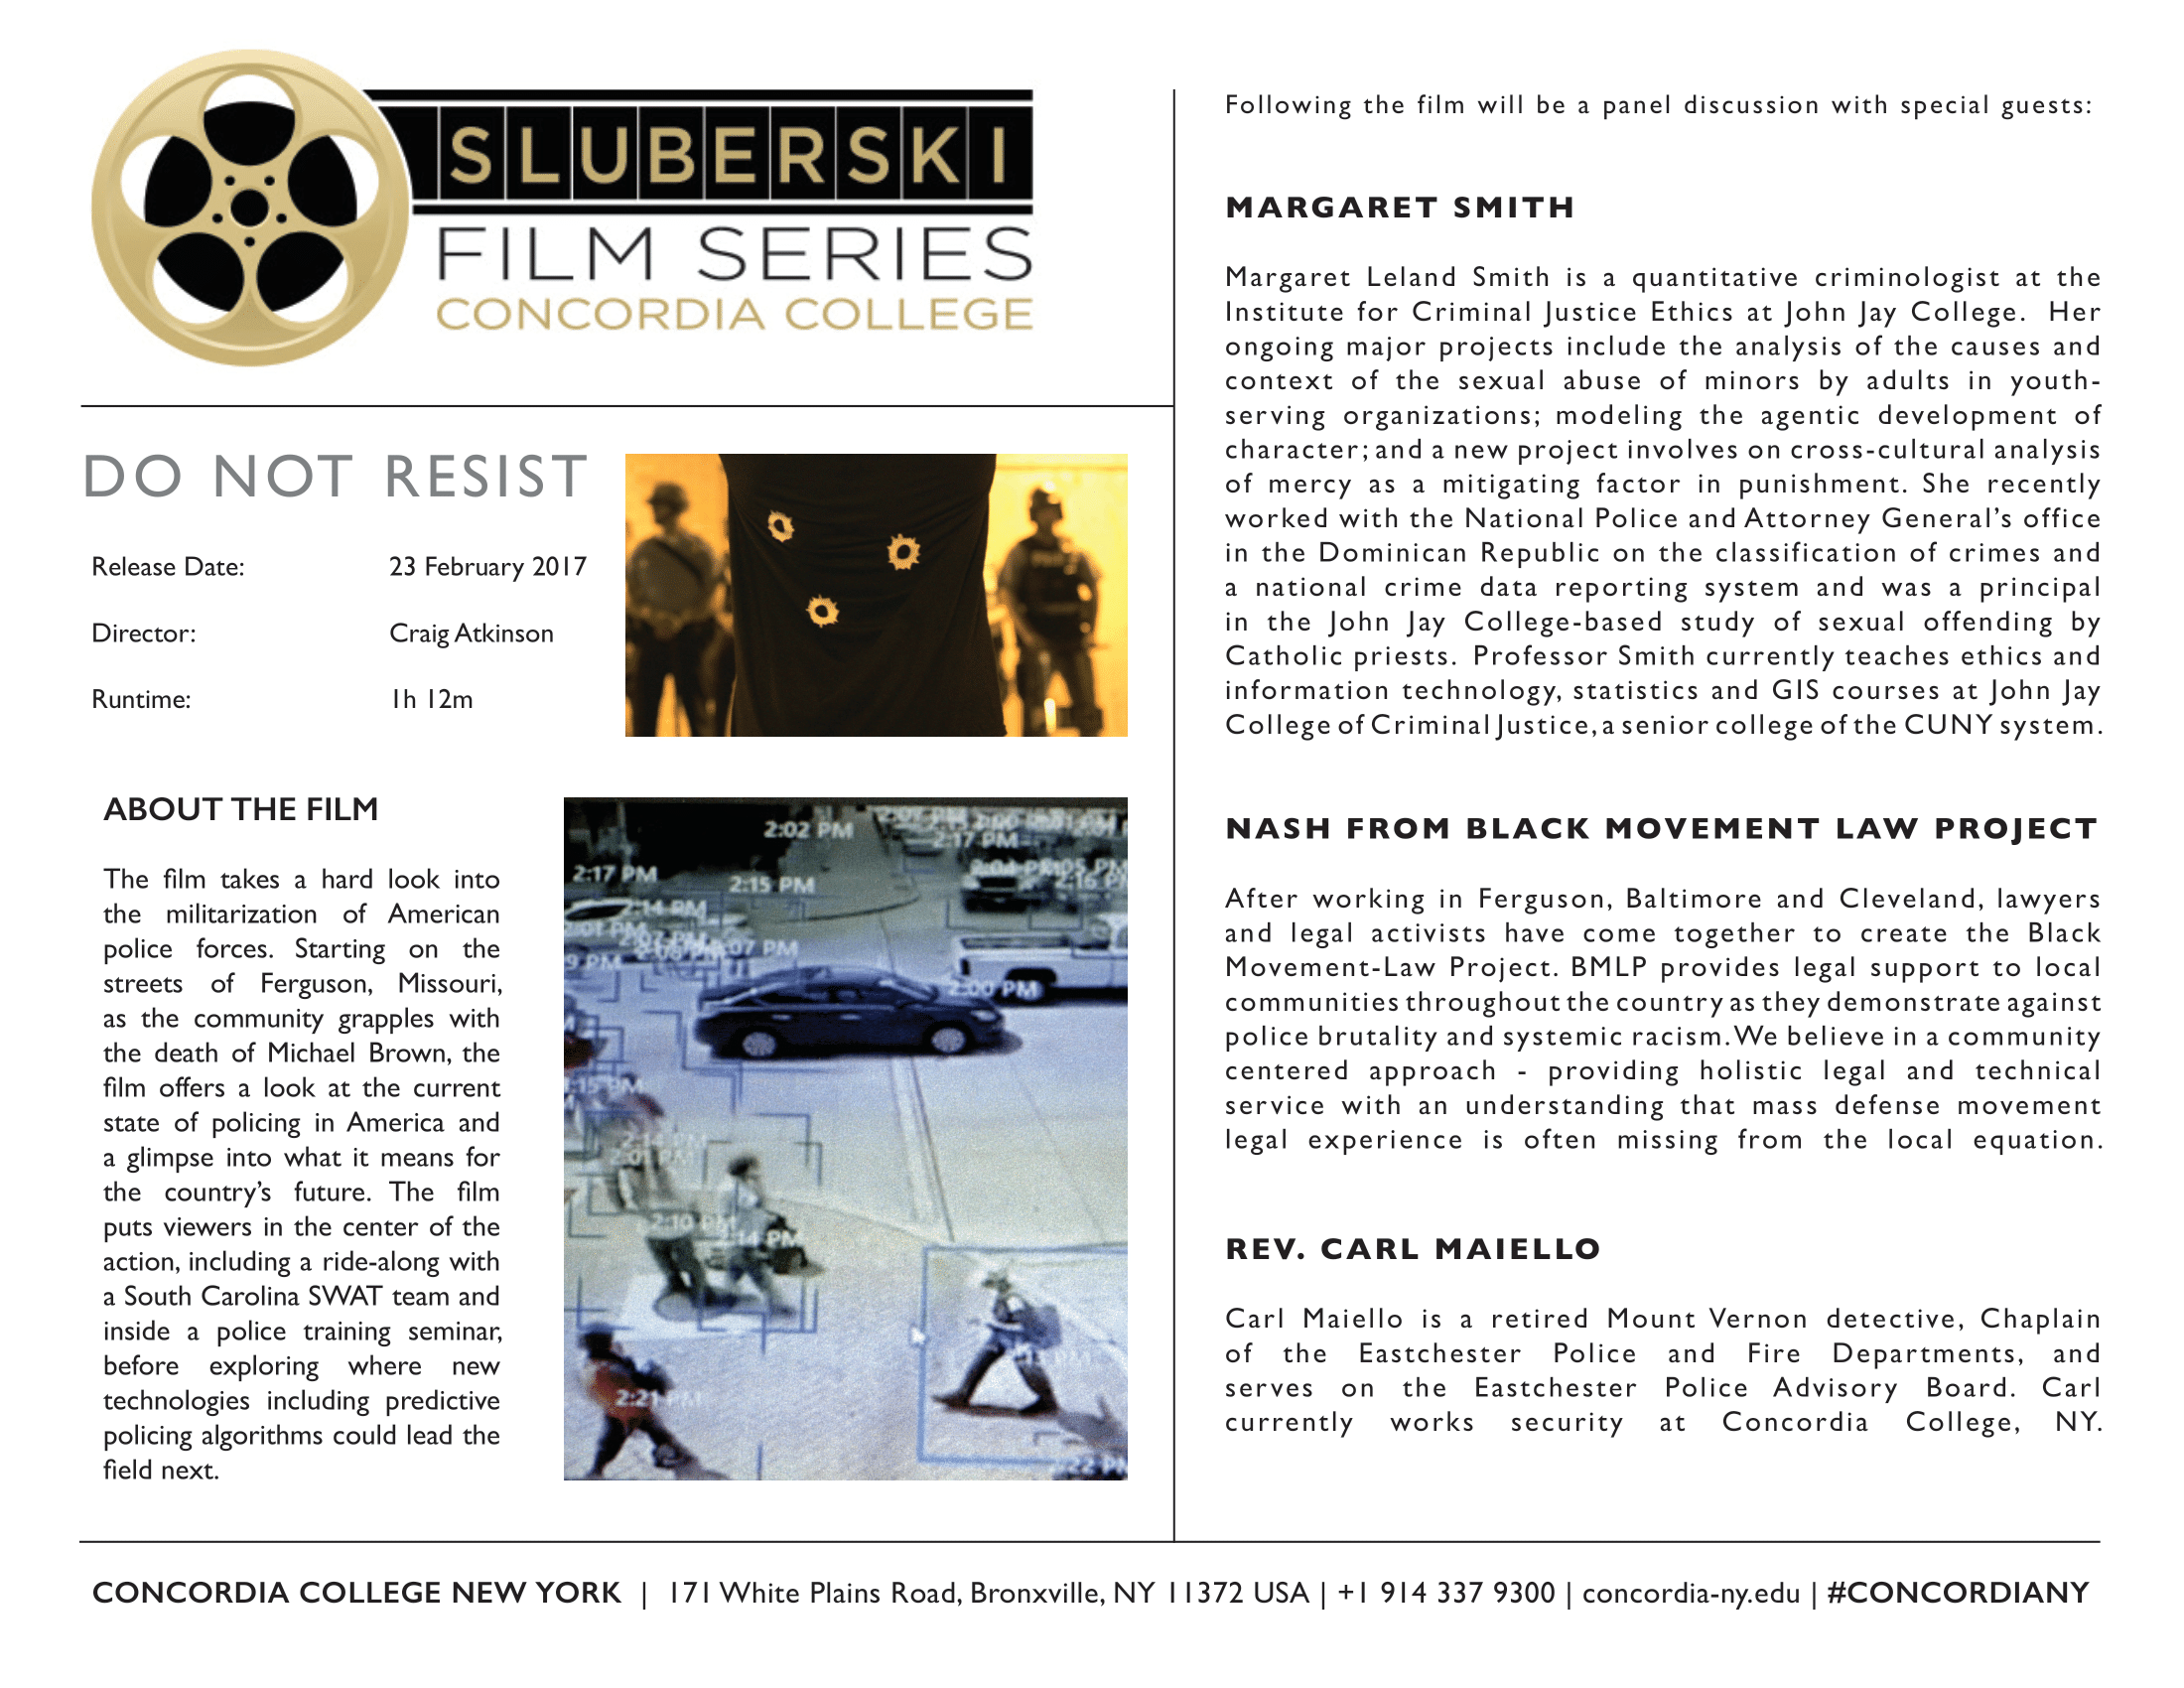 sluberski film series information sheet for do not resist